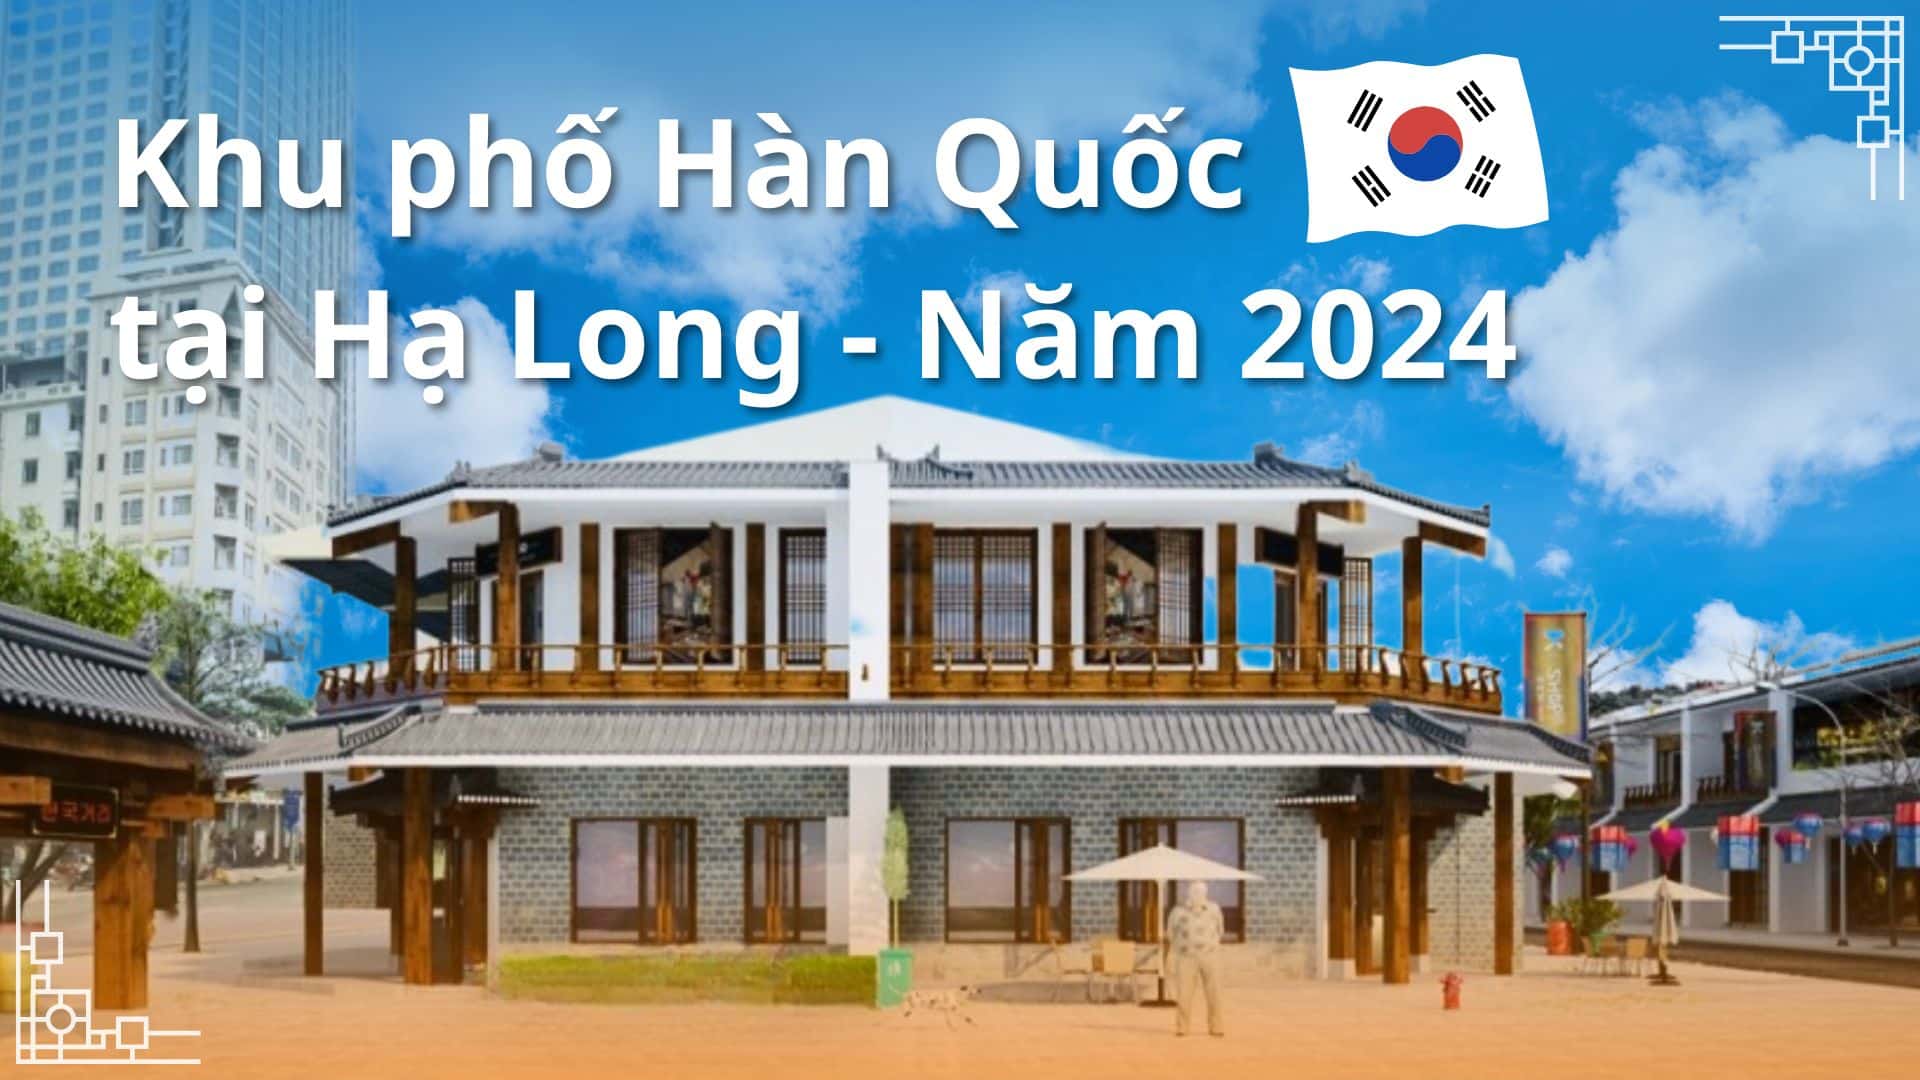 Khu phố Hàn Quốc tại Hạ Long sẽ ra mắt du khách năm 2024